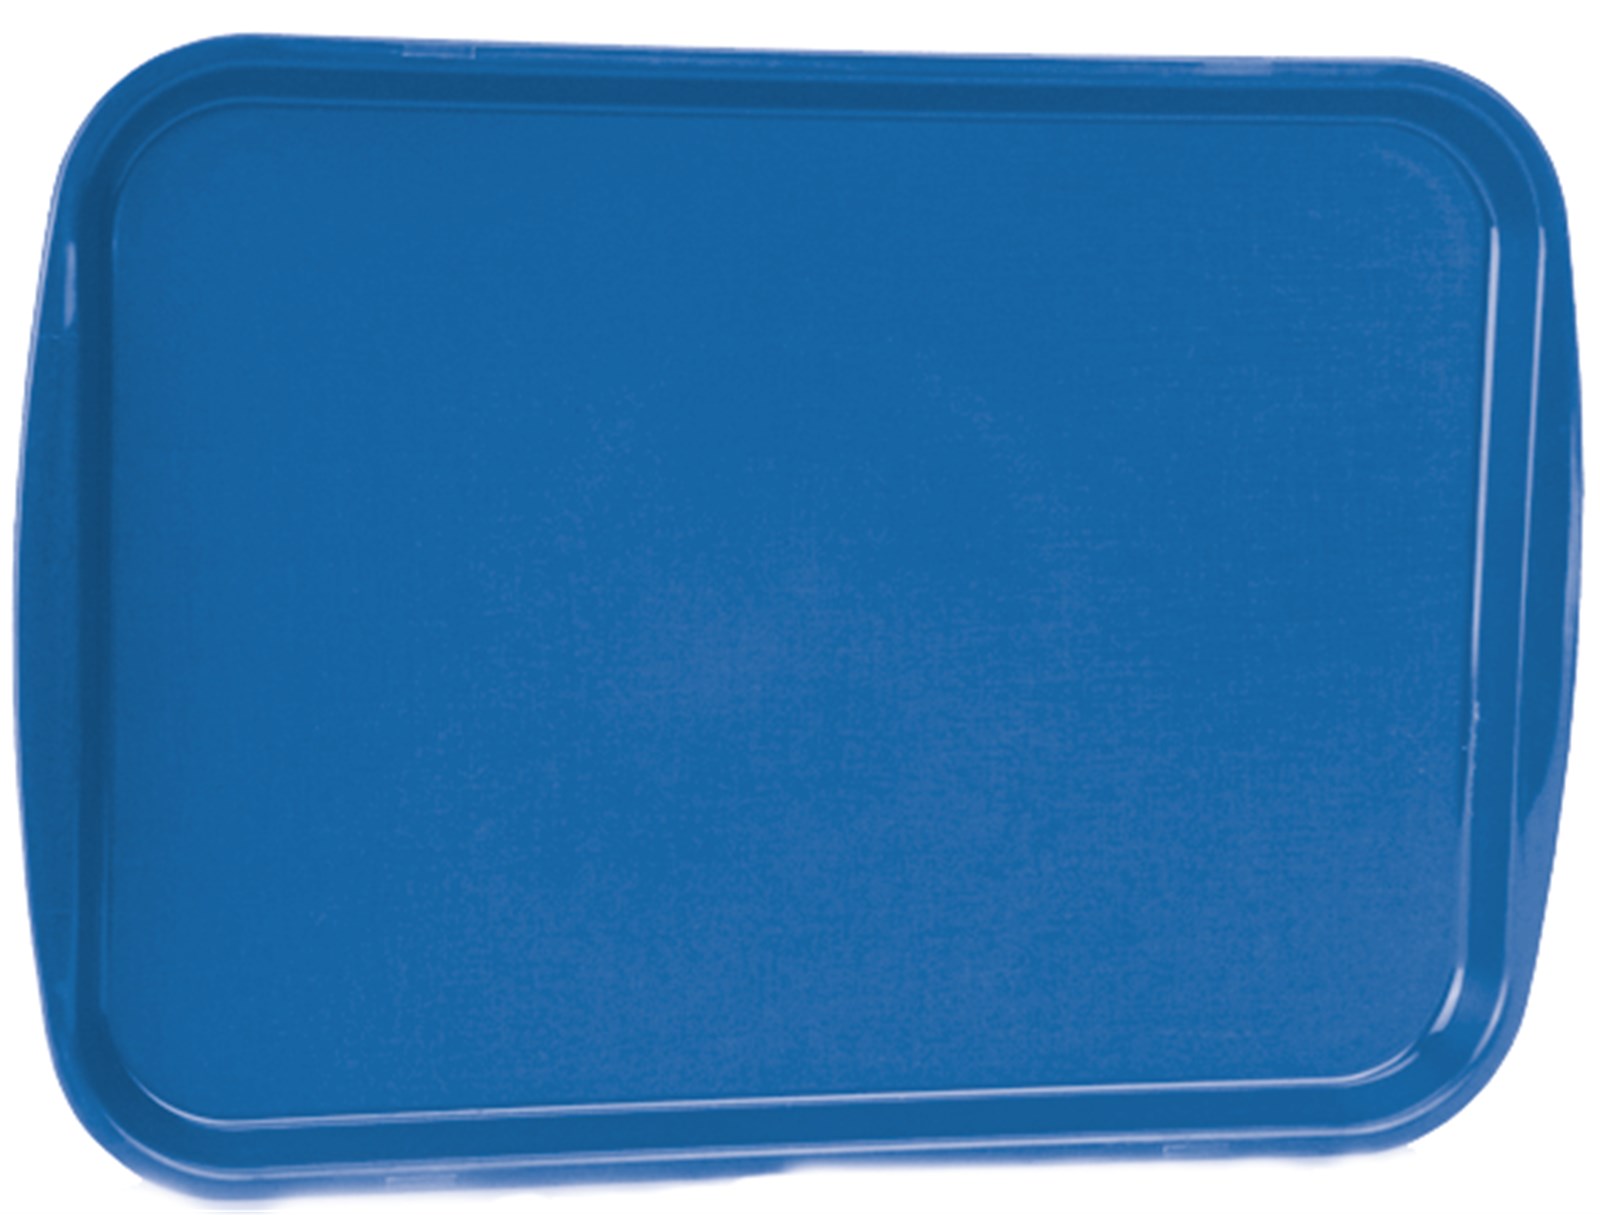 Fast Food Tablett blau 35.6 x 45.7cm in Blau präsentiert im Onlineshop von KAQTU Design AG. Tablett ist von Vollrath